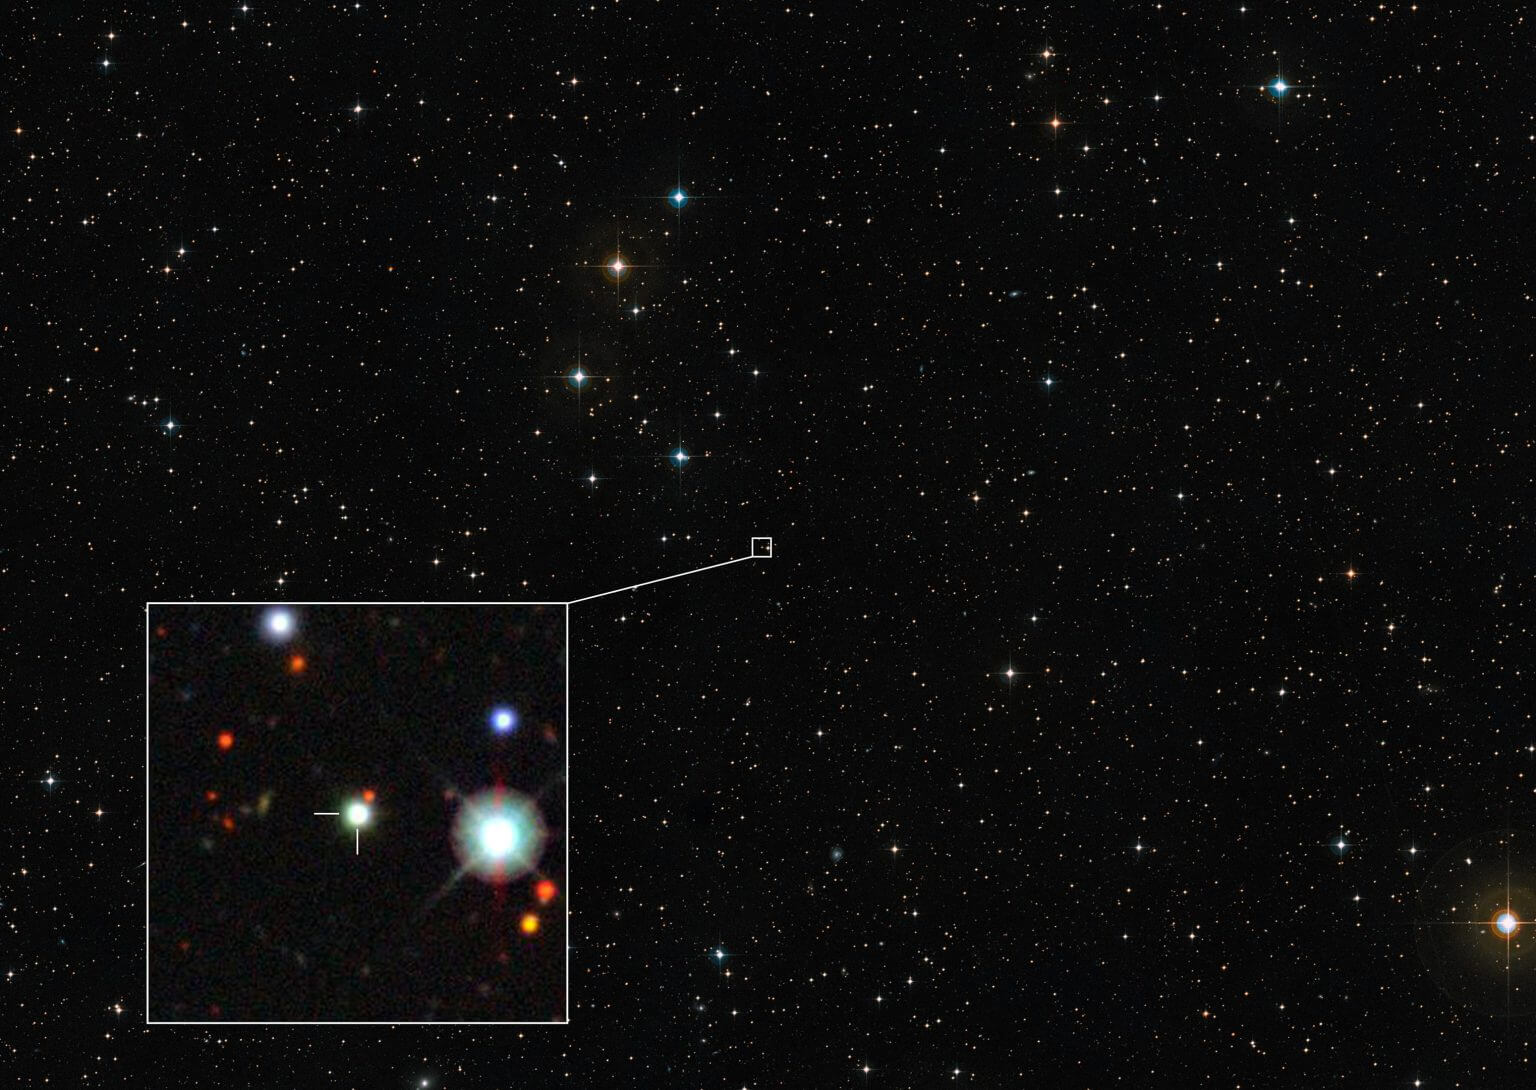 התמונה הזו מציגה את האזור בשמים בו נמצא הקוואזר ששבר שיאים, J0529-4351. באמצעות טלסקופ הענק של המצפה האירופי הדרומי (VLT) בצ'ילה, נמצא קוואזר זה כעצם הזוהר ביותר הידוע ביקום עד כה. התמונה הזו נוצרה מתמונות שהן חלק מסקר השמיים הממוחשב 2, בעוד התמונה הקטנה מראה את מיקום הקוואזר בתמונה מסקר אנרגיה אפלה. קרדיט: ESO/סקר השמיים הממוחשב 2/סקר האנרגיה האפלה